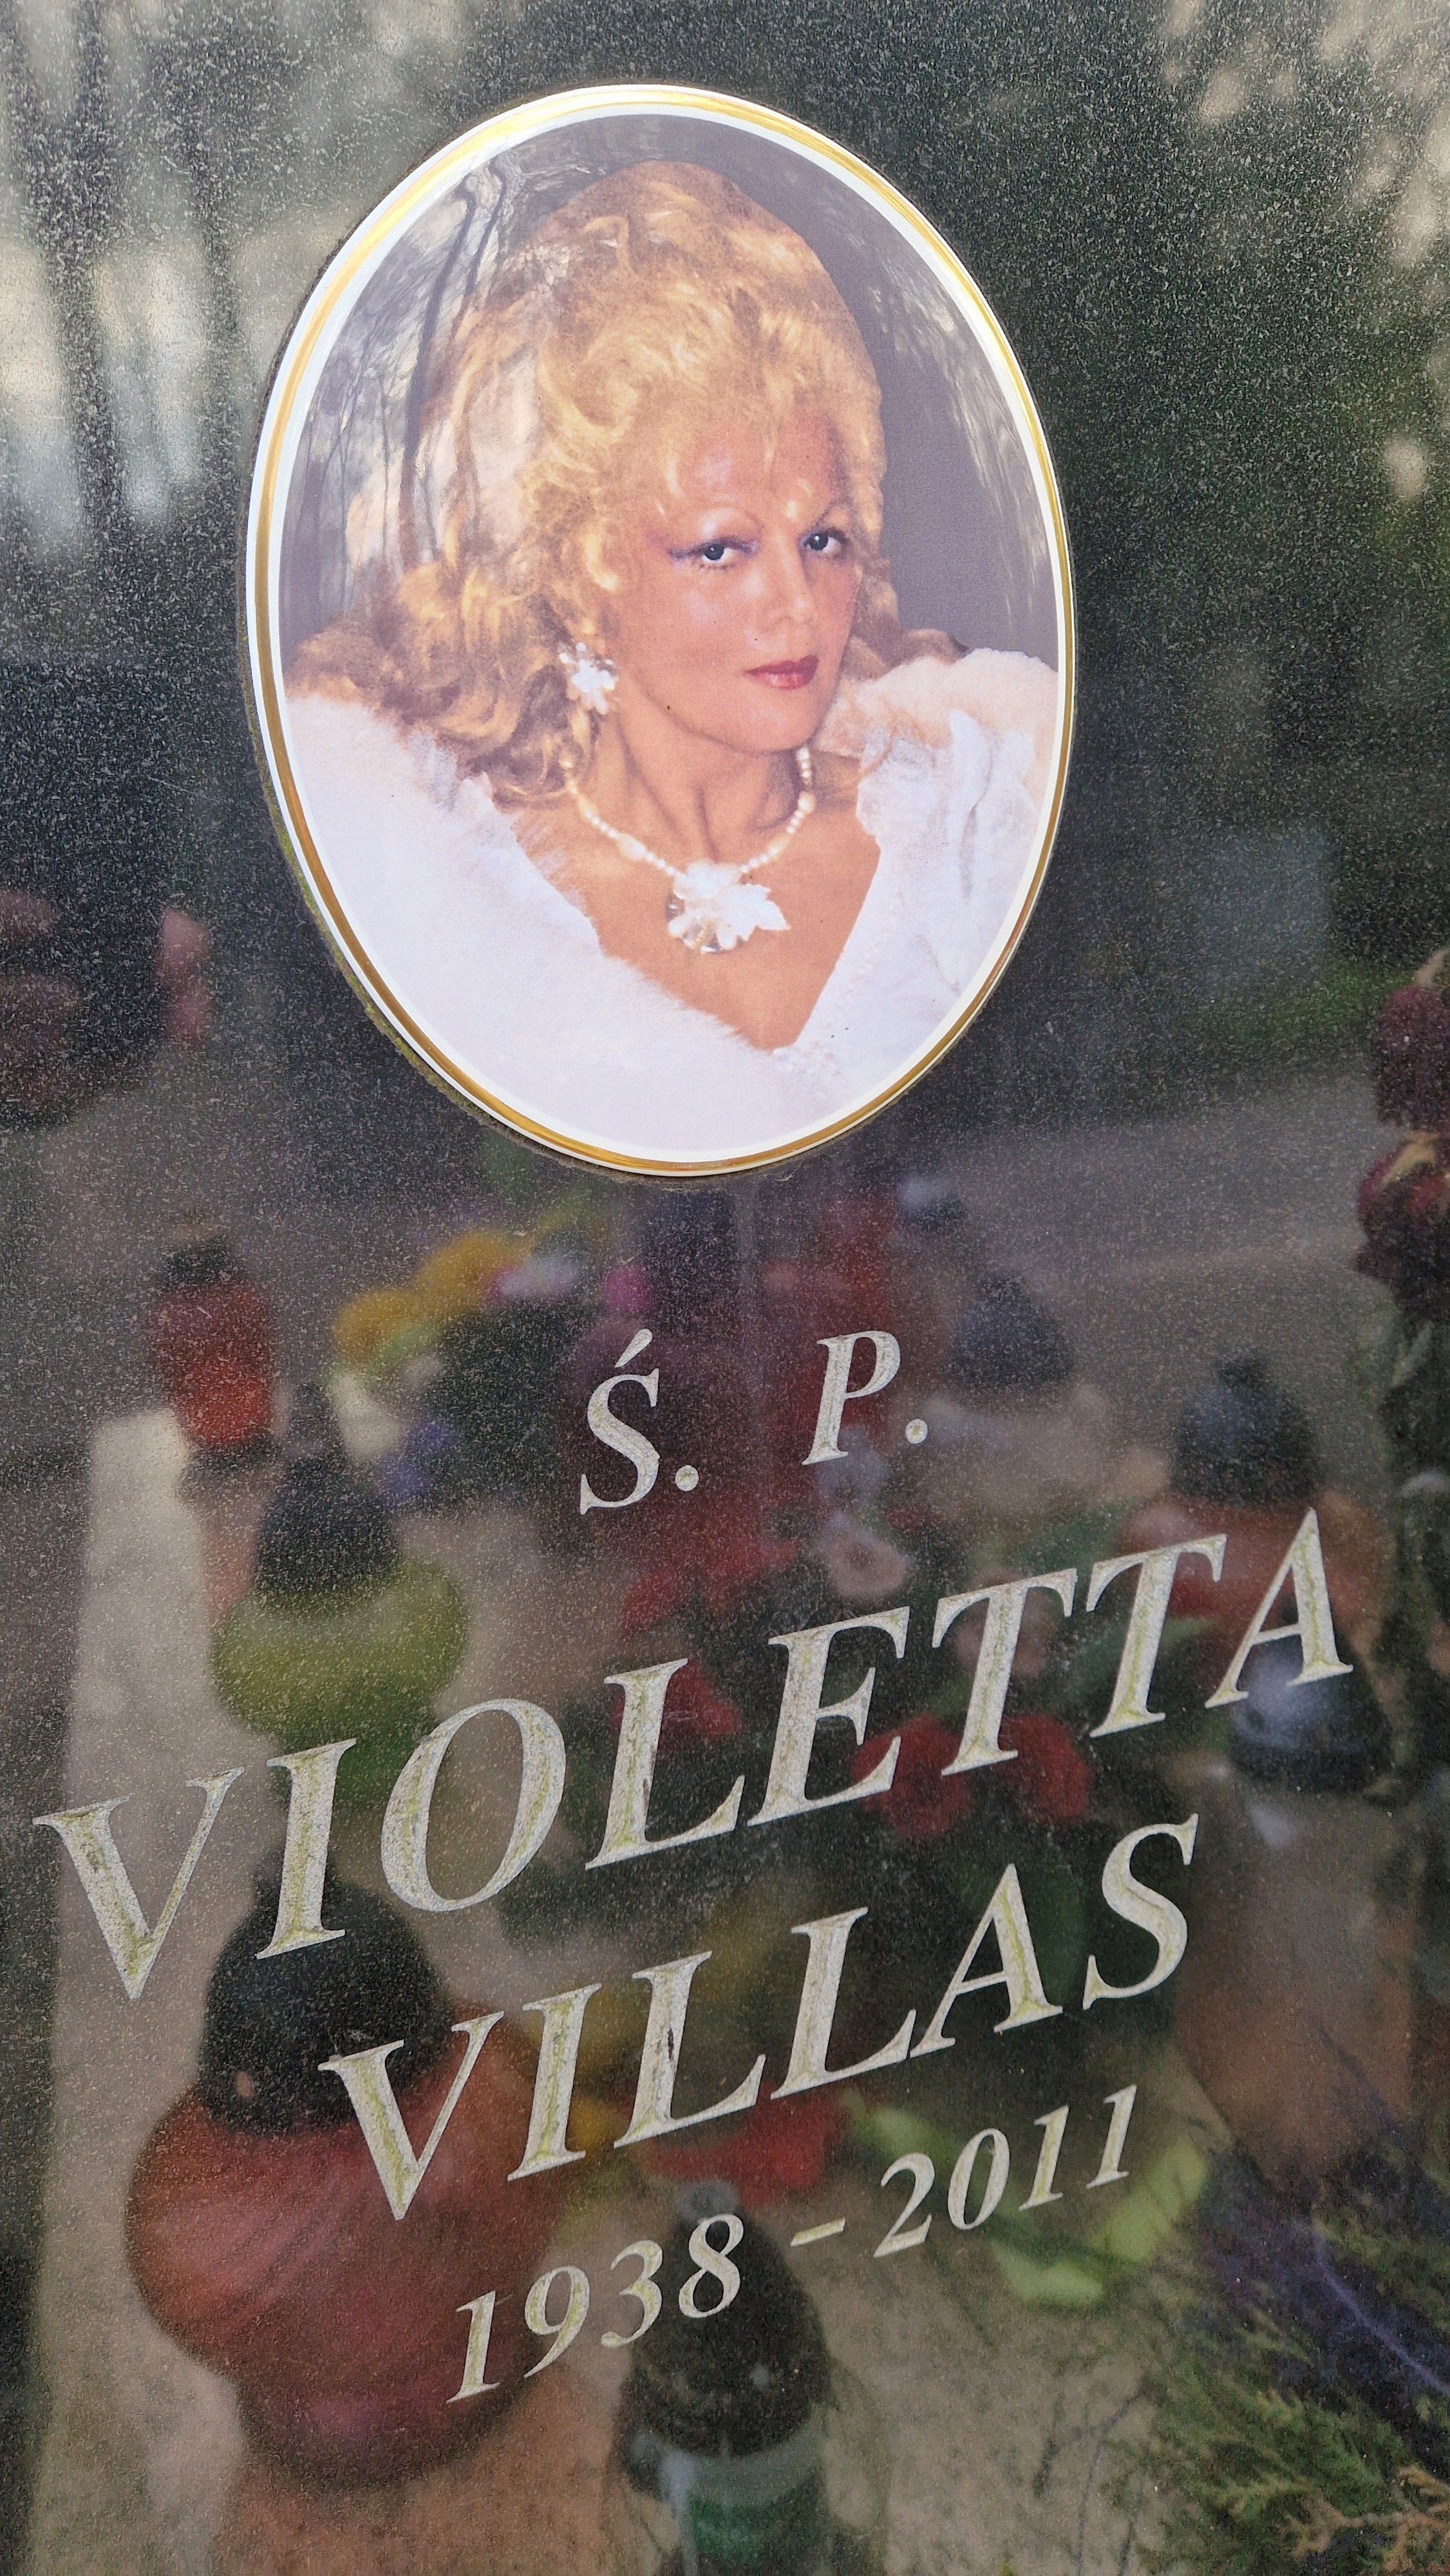 Violetta Villas 2.jpg